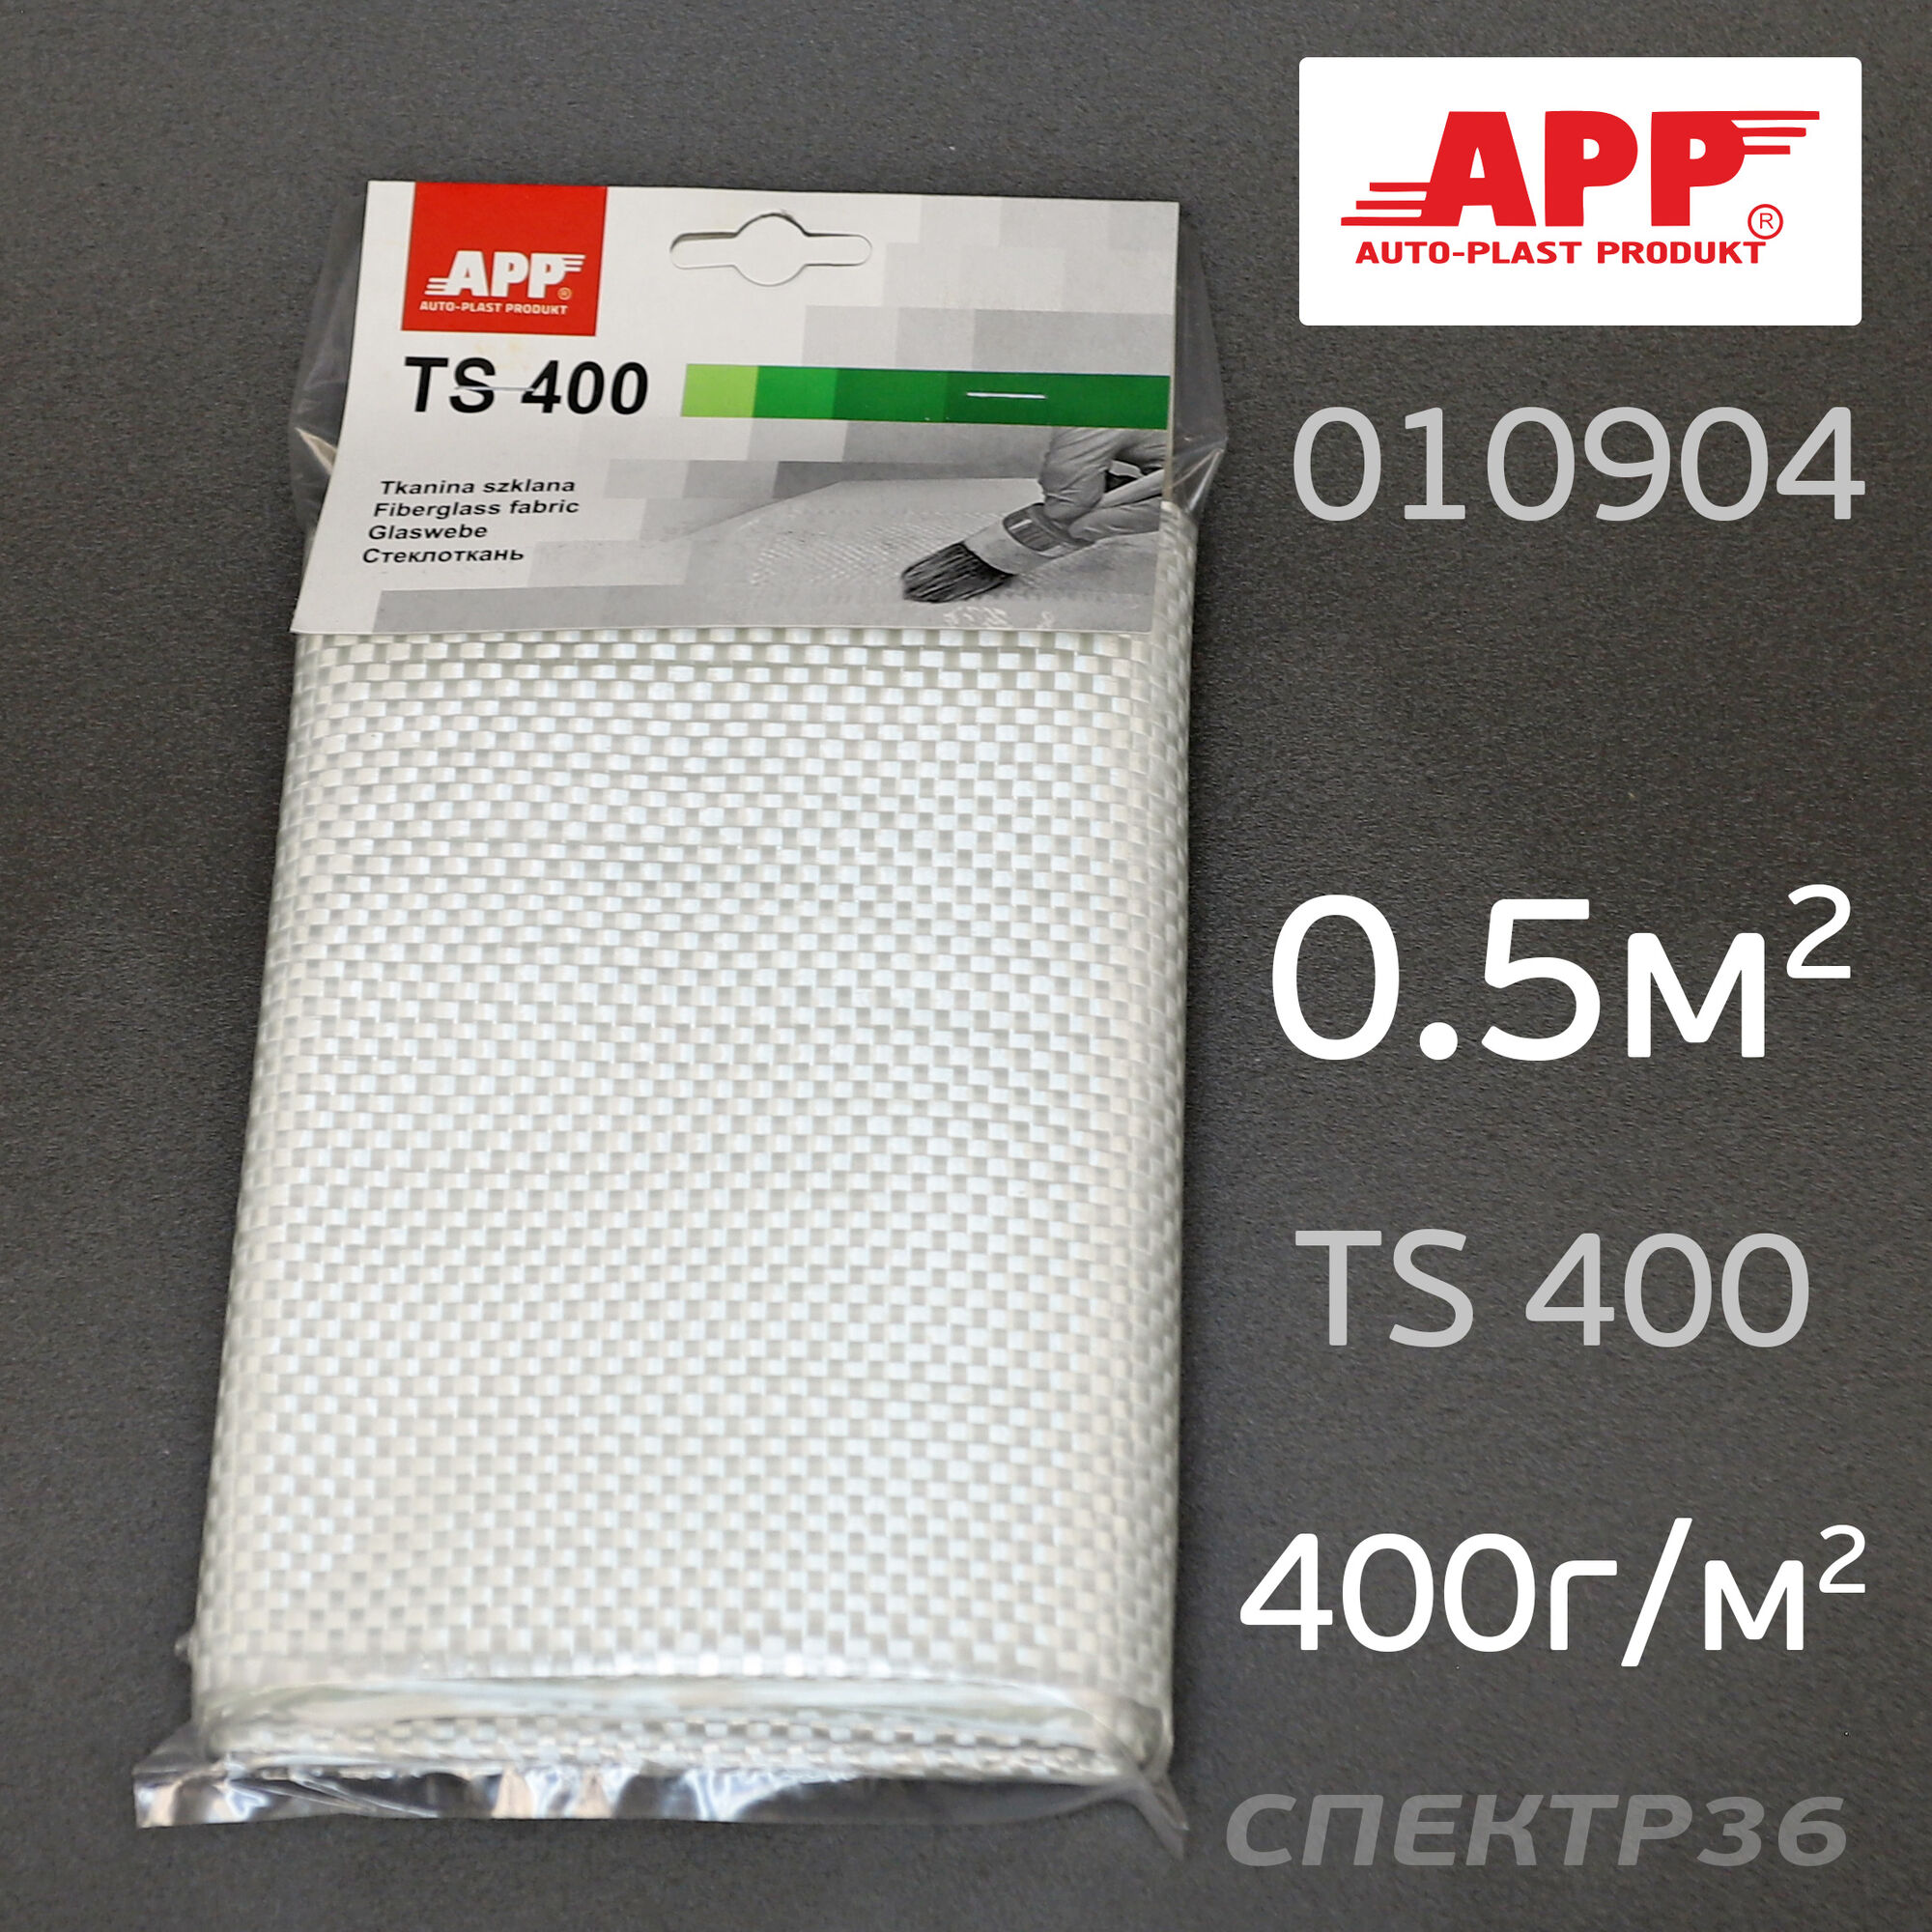 Стеклоткань APP 0,5кв.м (400г/м2) TS 400 1